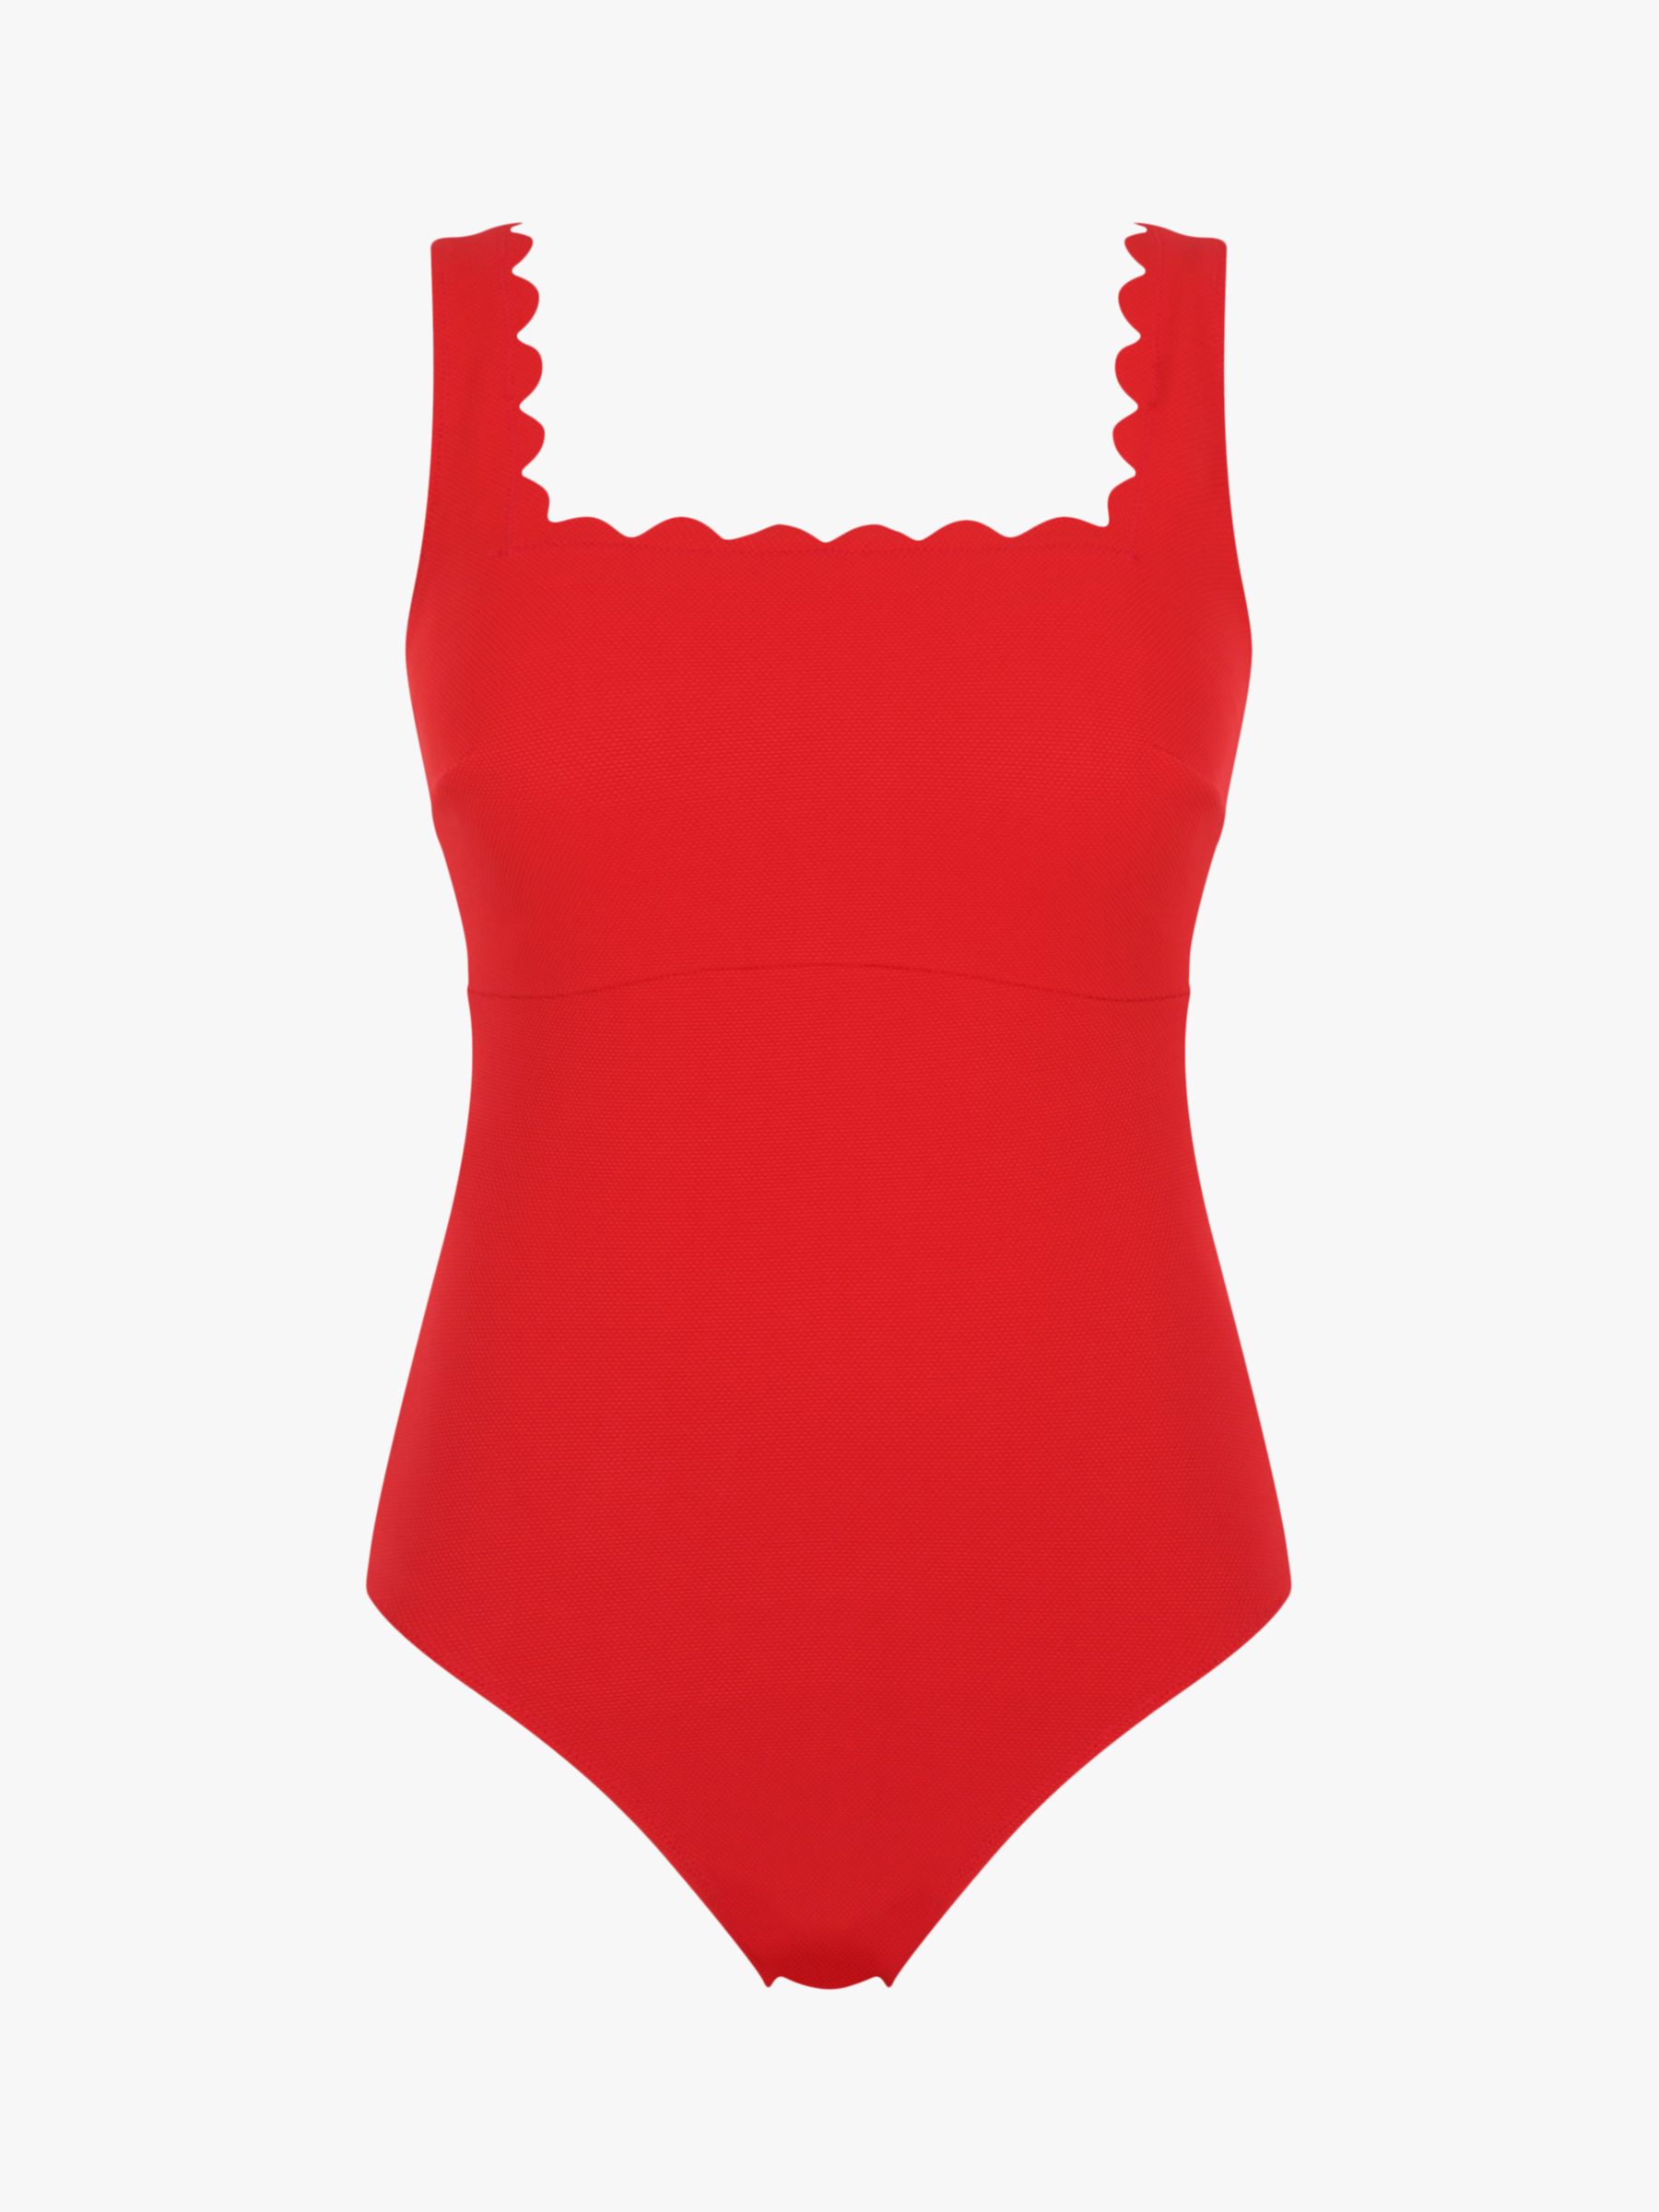 Panache Honor Square Neck Swimsuit, Rossa Red, 38E